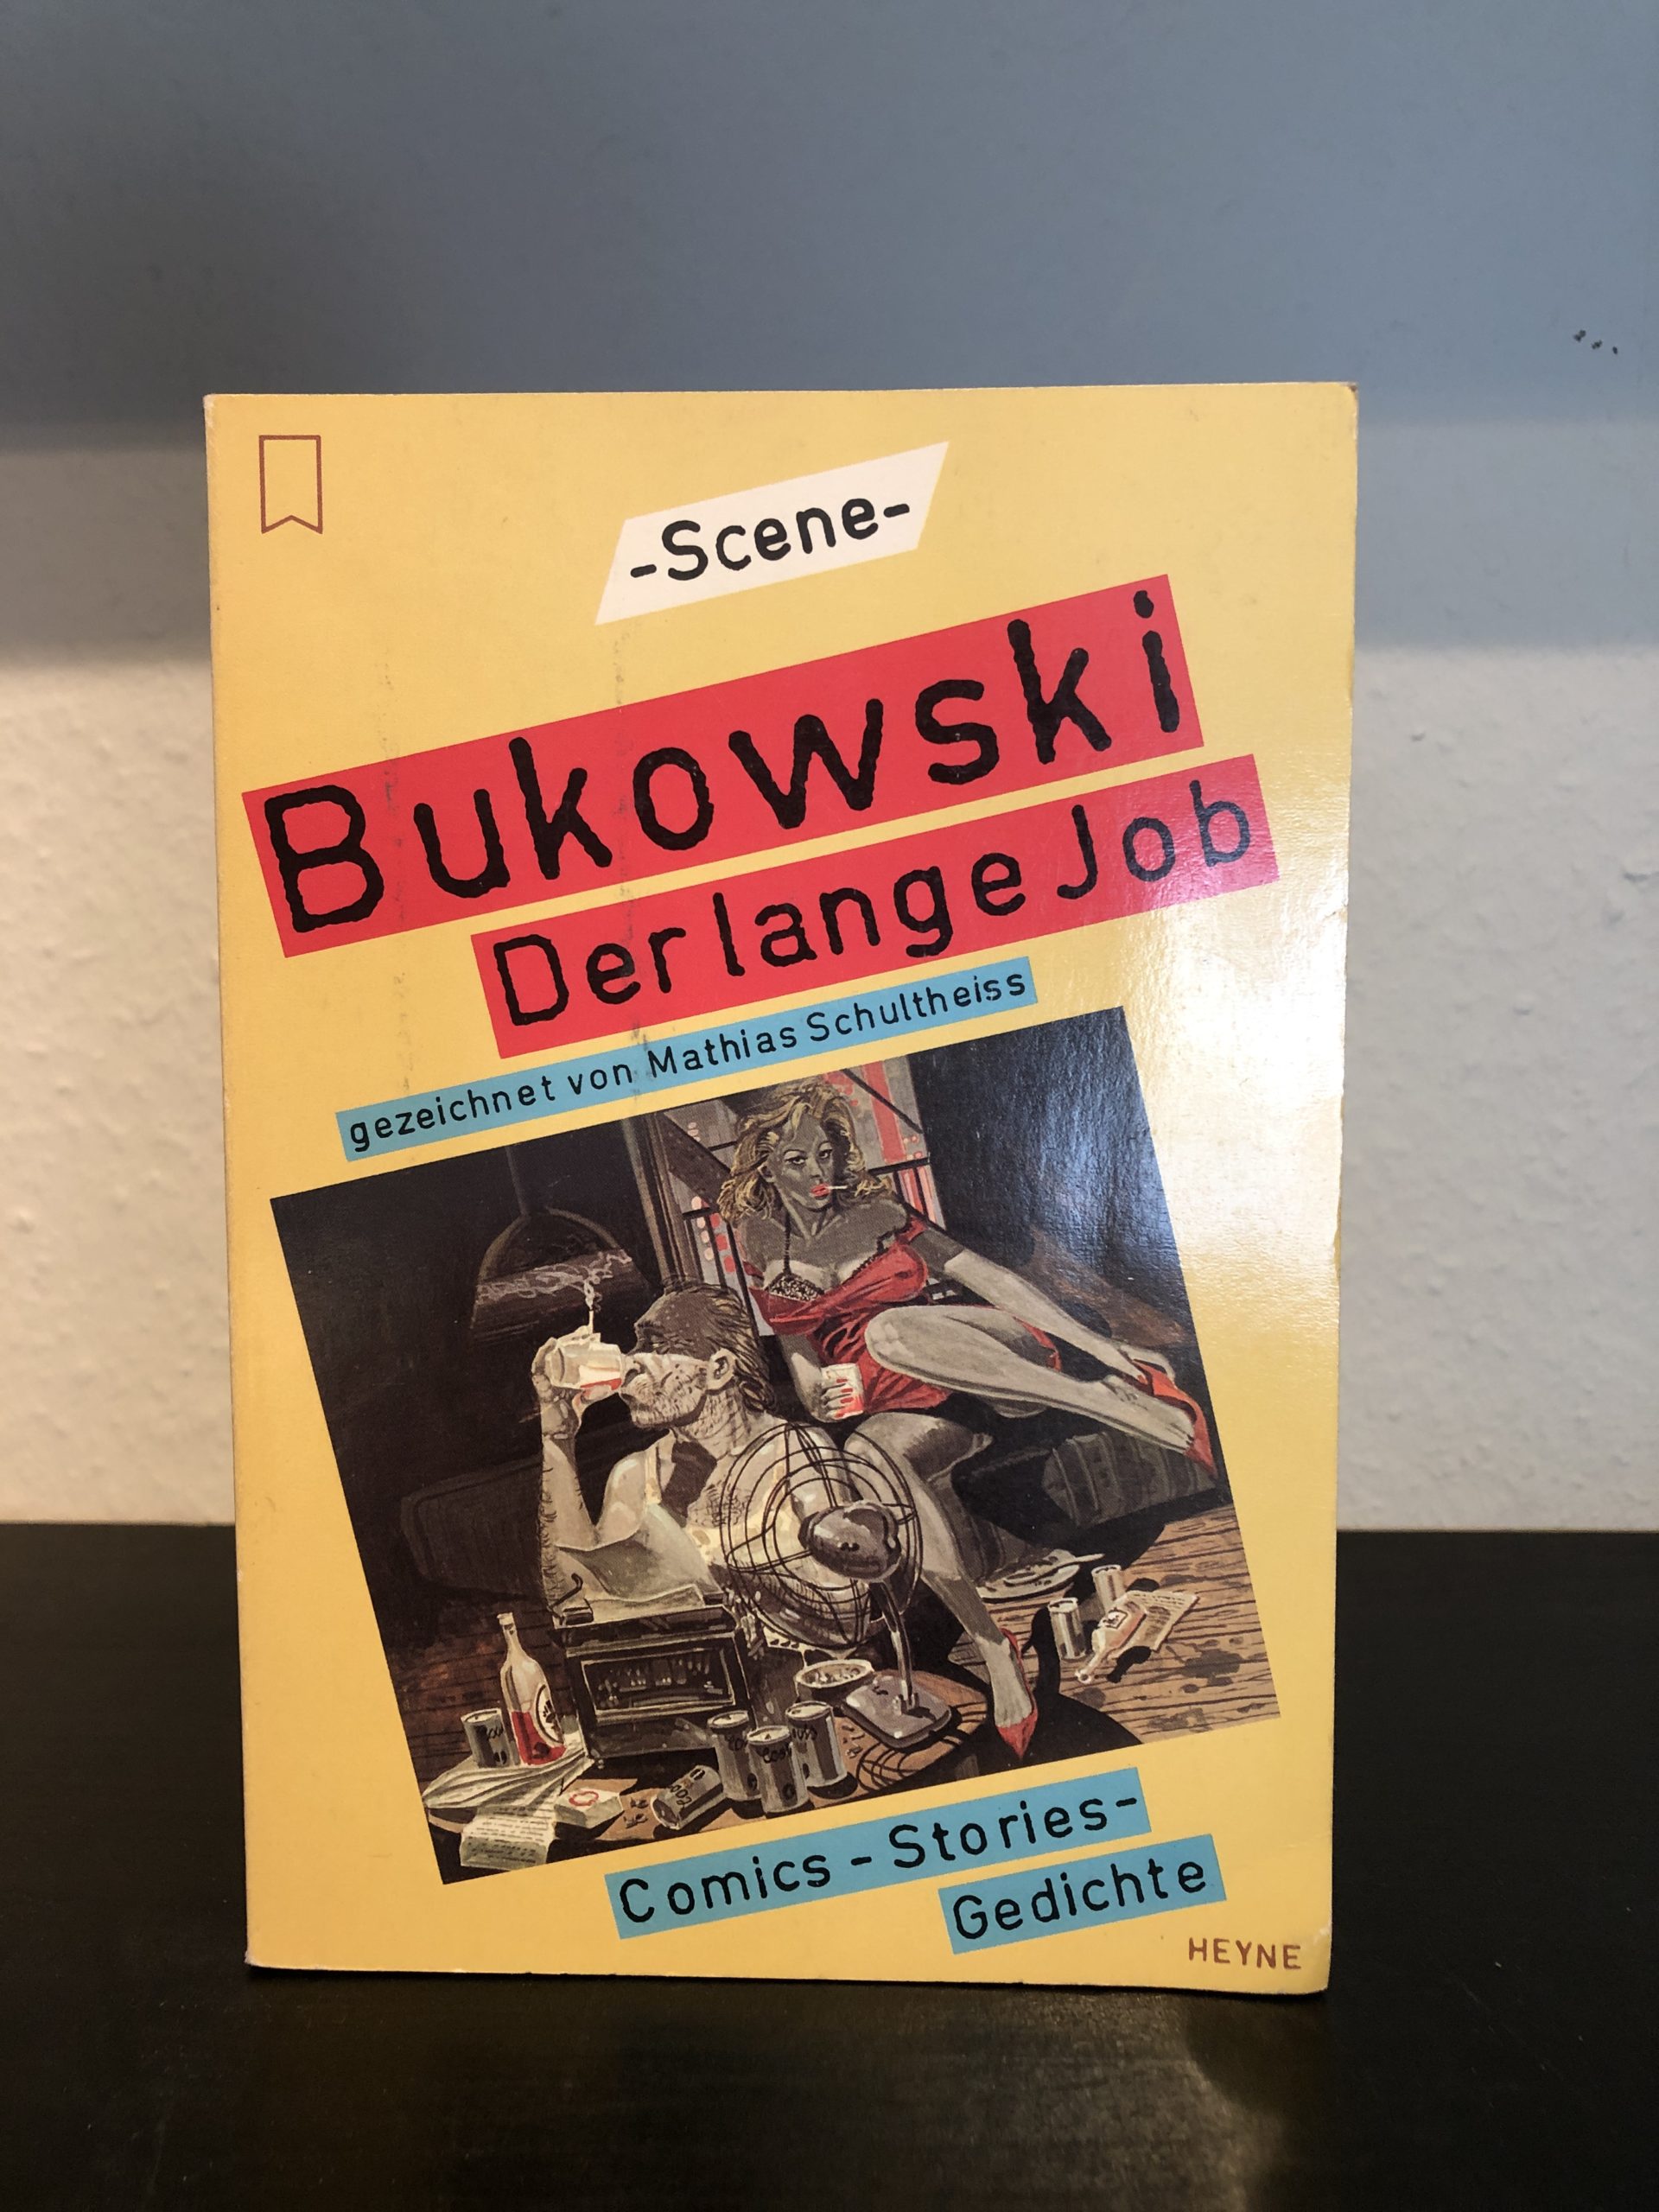 Der lange Job - Charles Bukowski